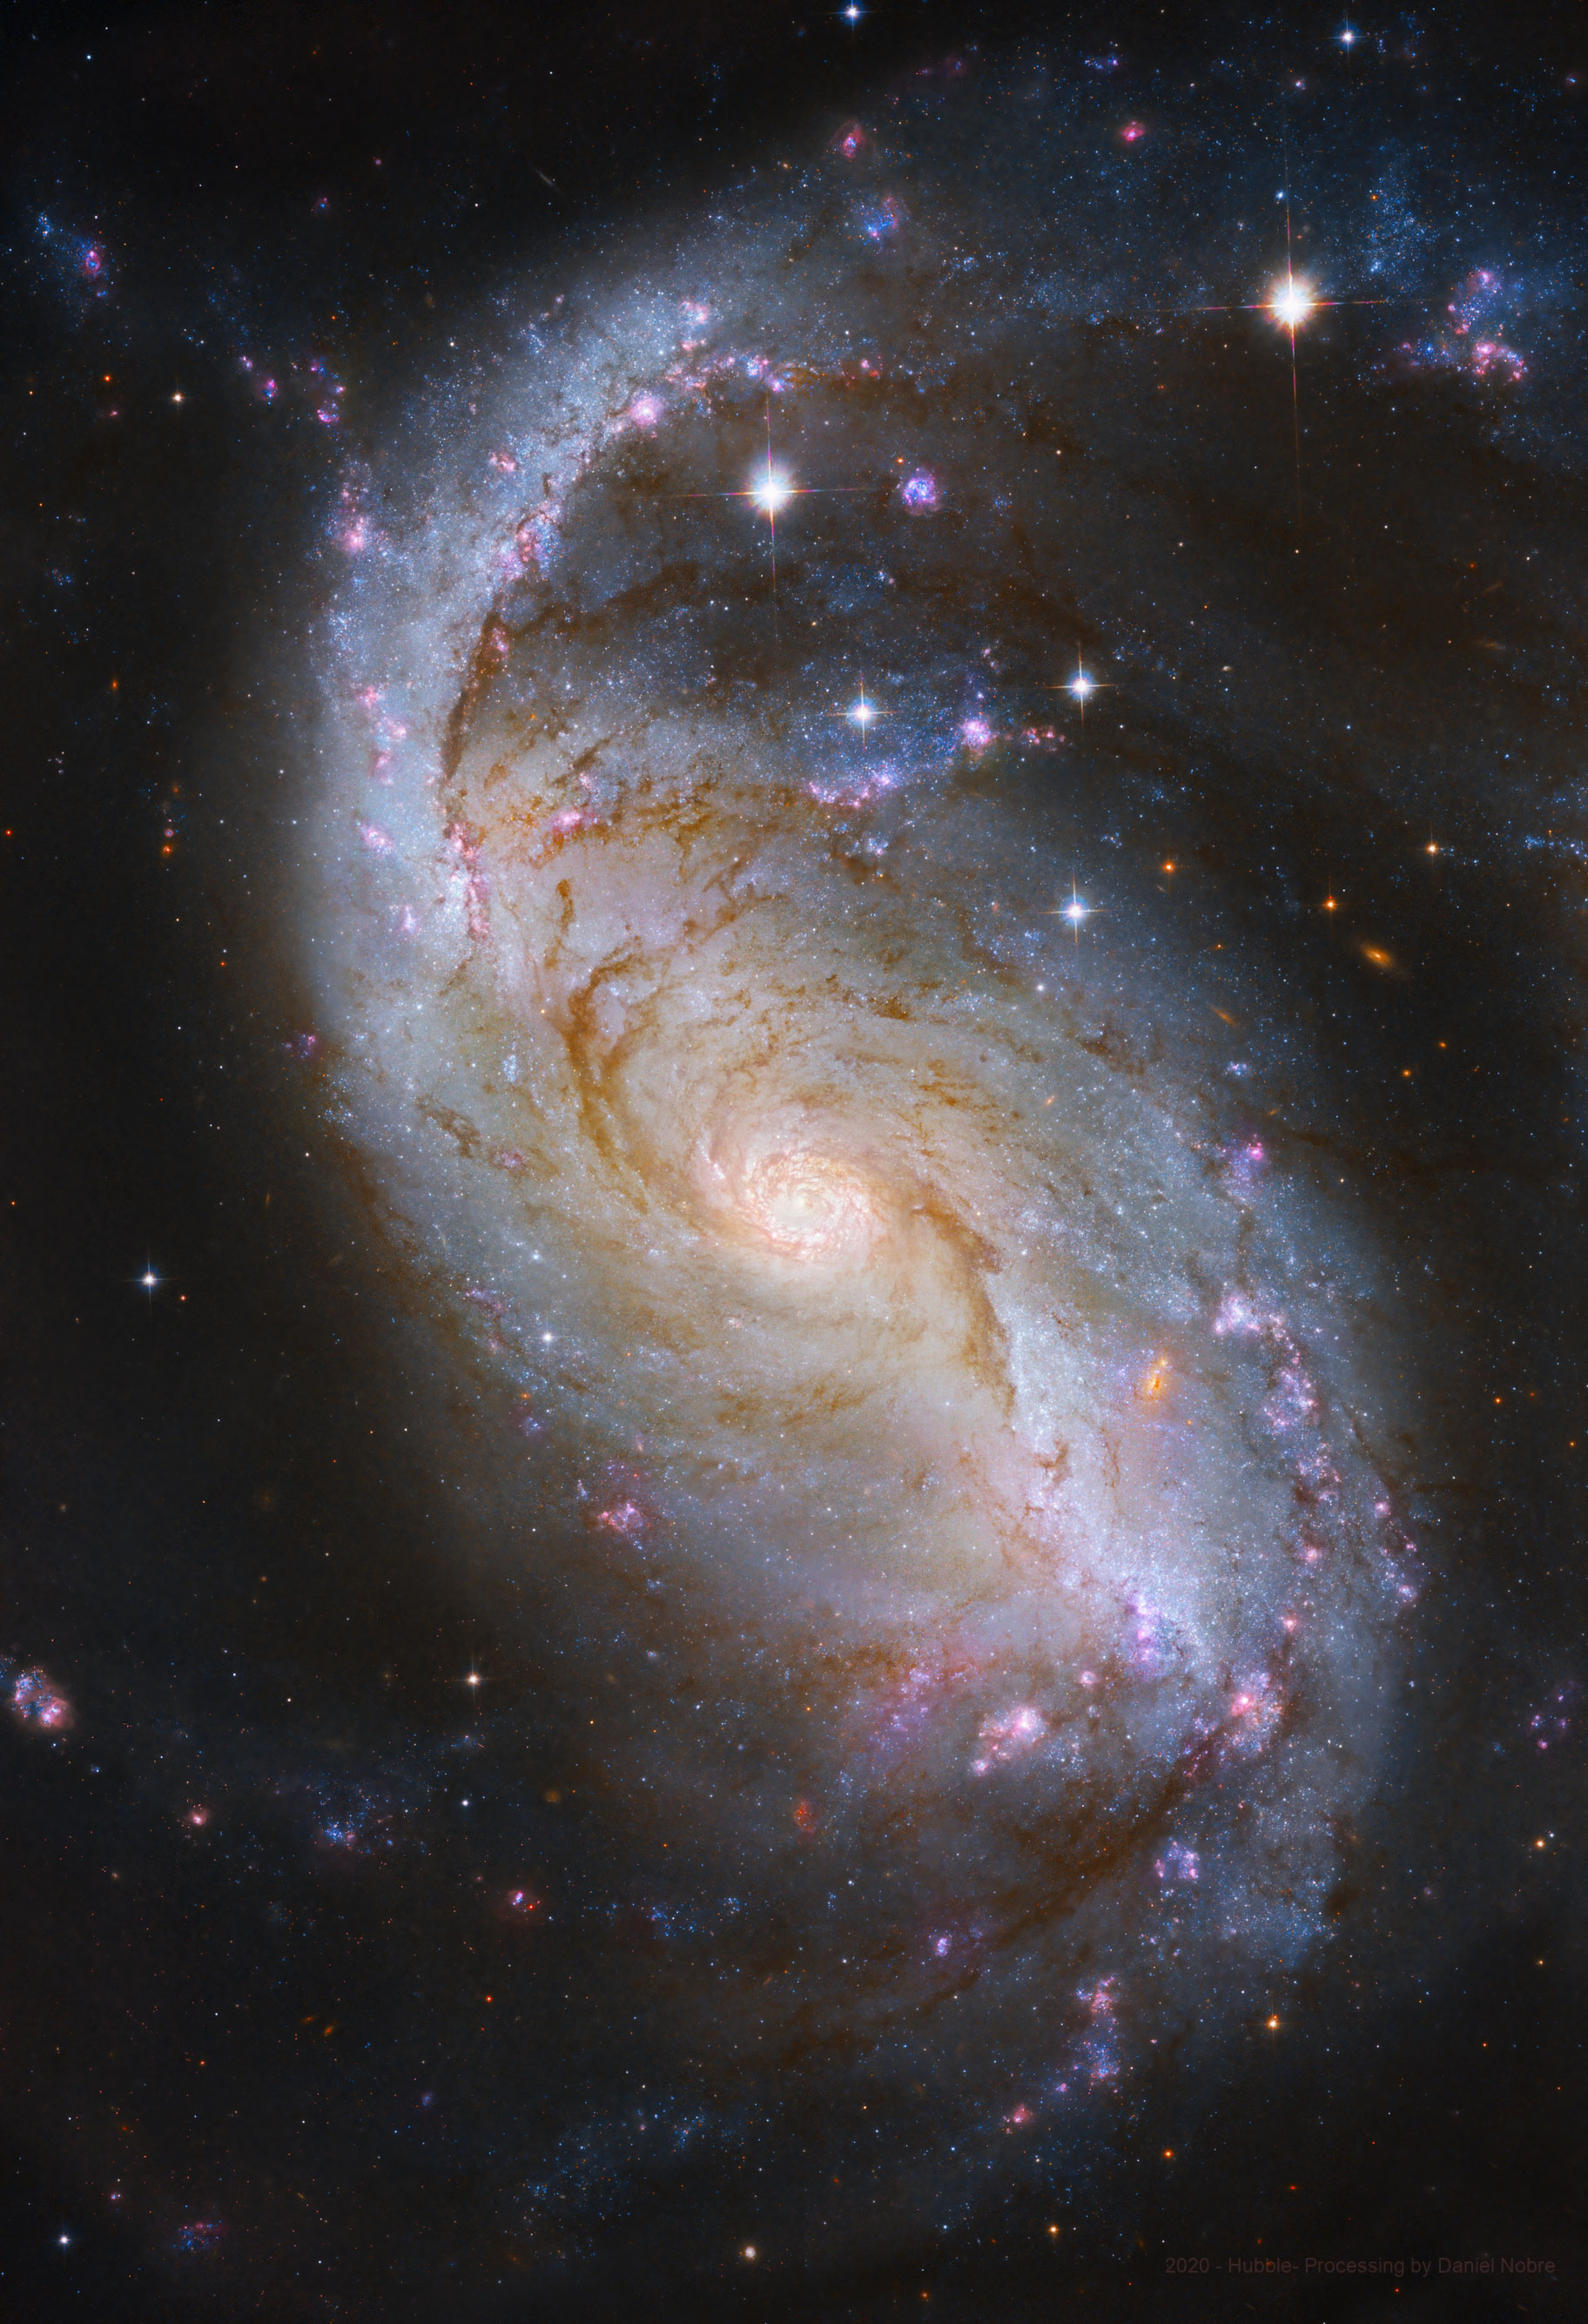 【每日天文】哈勃望远镜拍摄的棒旋星系